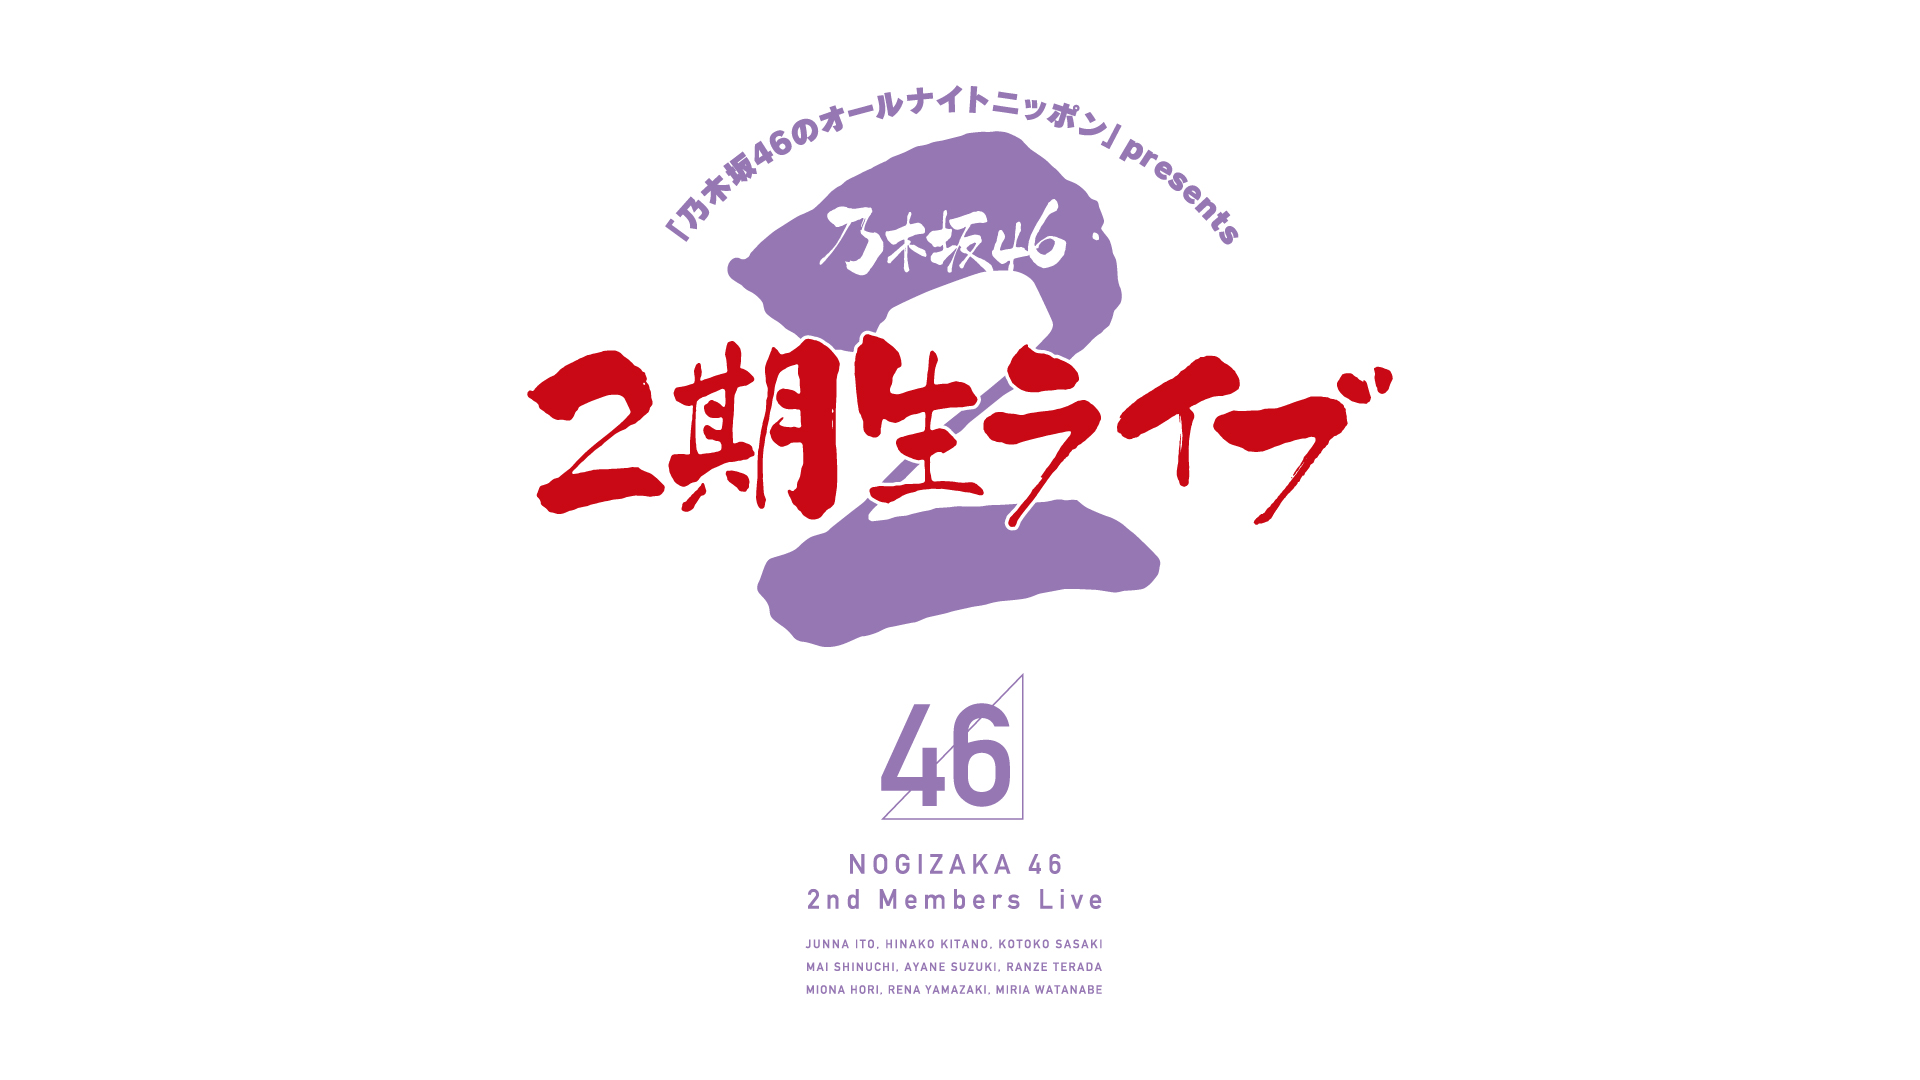 乃木坂46のオールナイトニッポン オールナイトニッポン Com ラジオam1242 Fm93 ニッポン放送